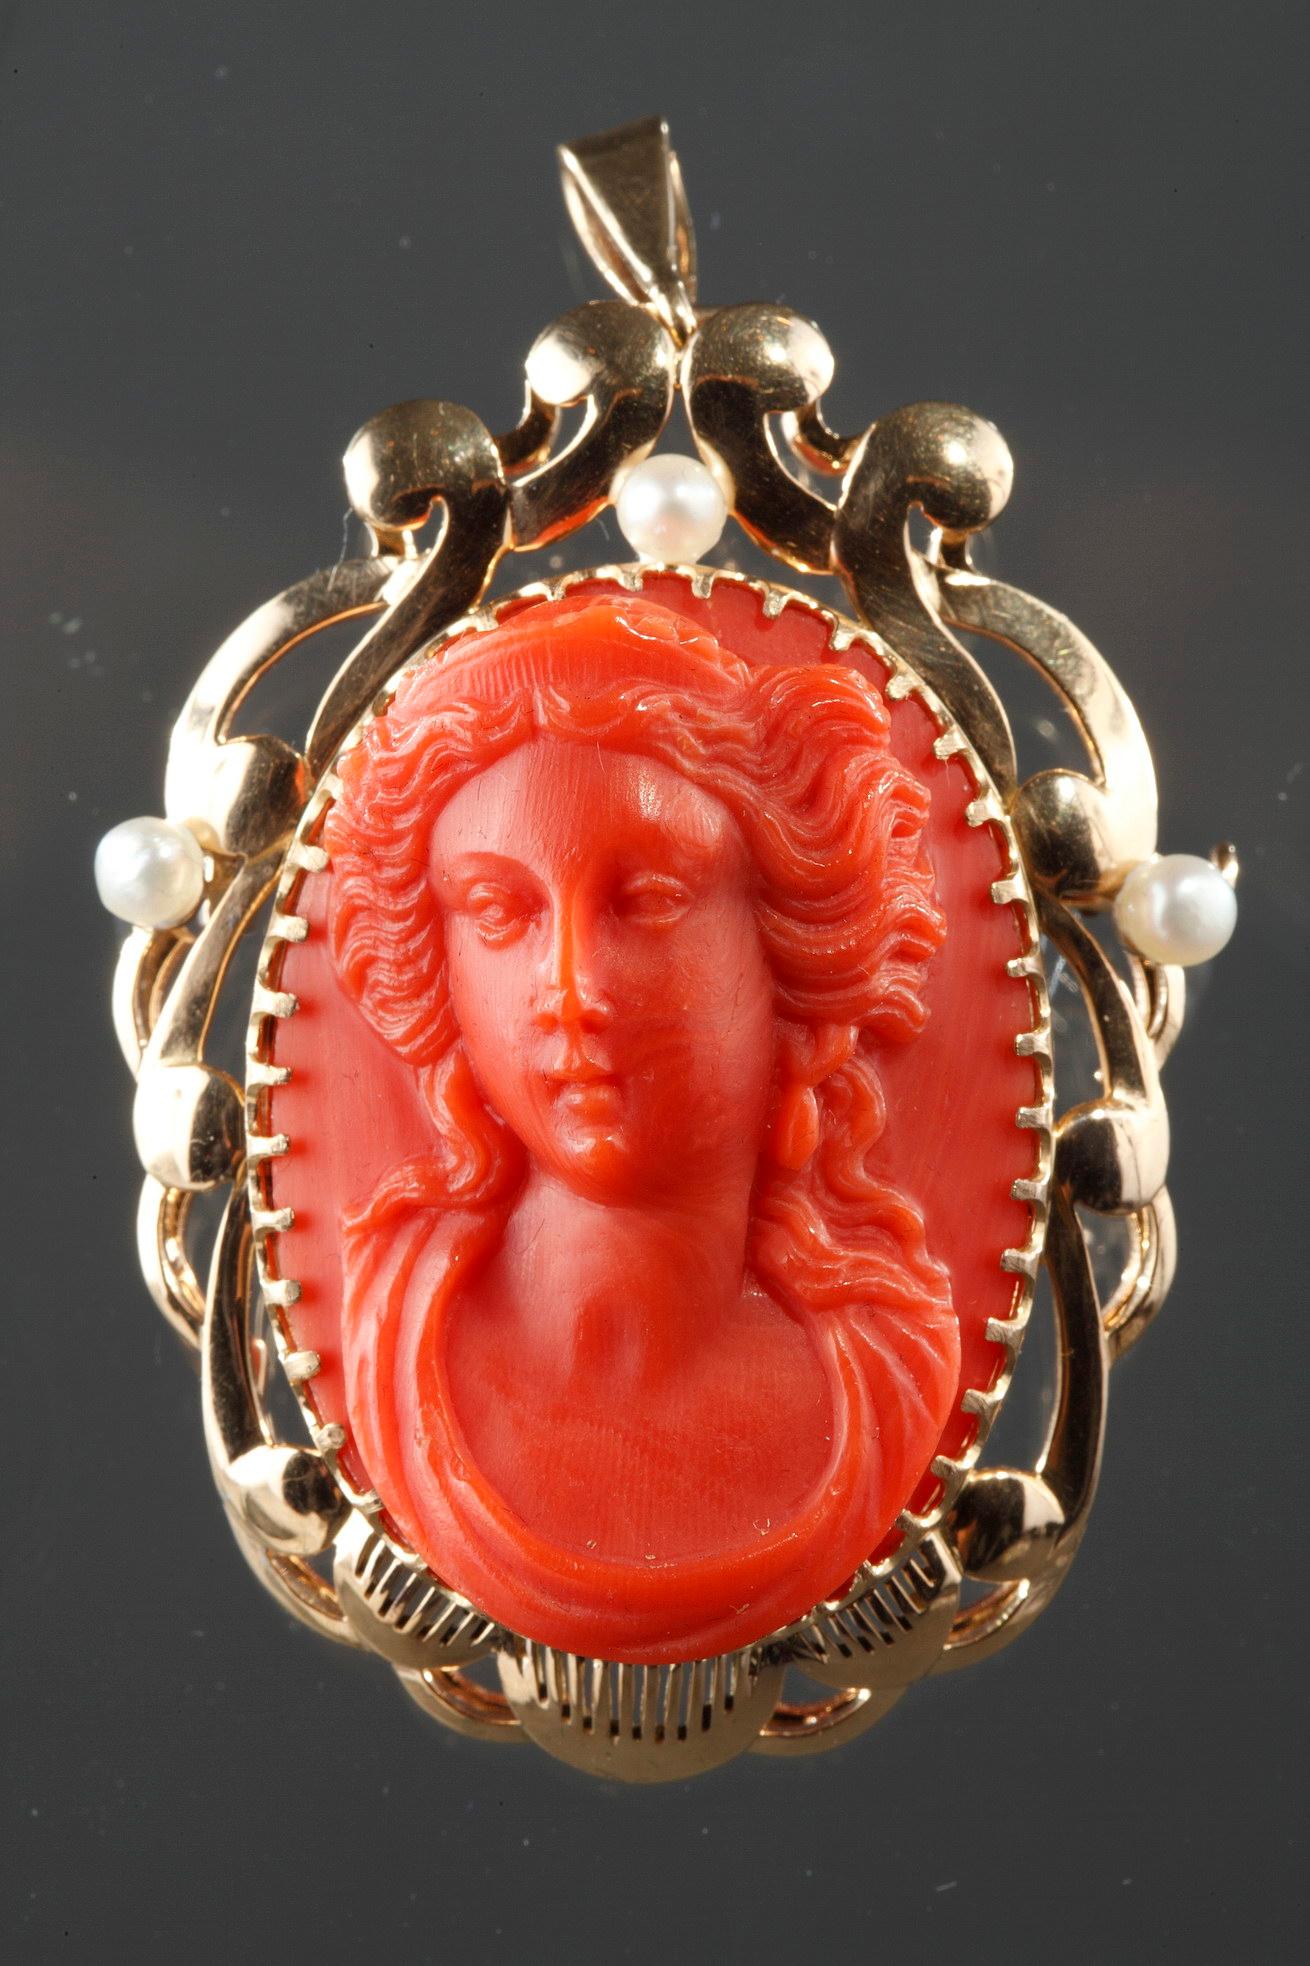 Ovaler Broschen-Anhänger aus dem 19. Jahrhundert, verziert mit einer Kamee, die eine junge Frau im Renaissance-Stil darstellt. Durchbrochene Goldbeschläge, mit Perlen verziert.
18 Karat